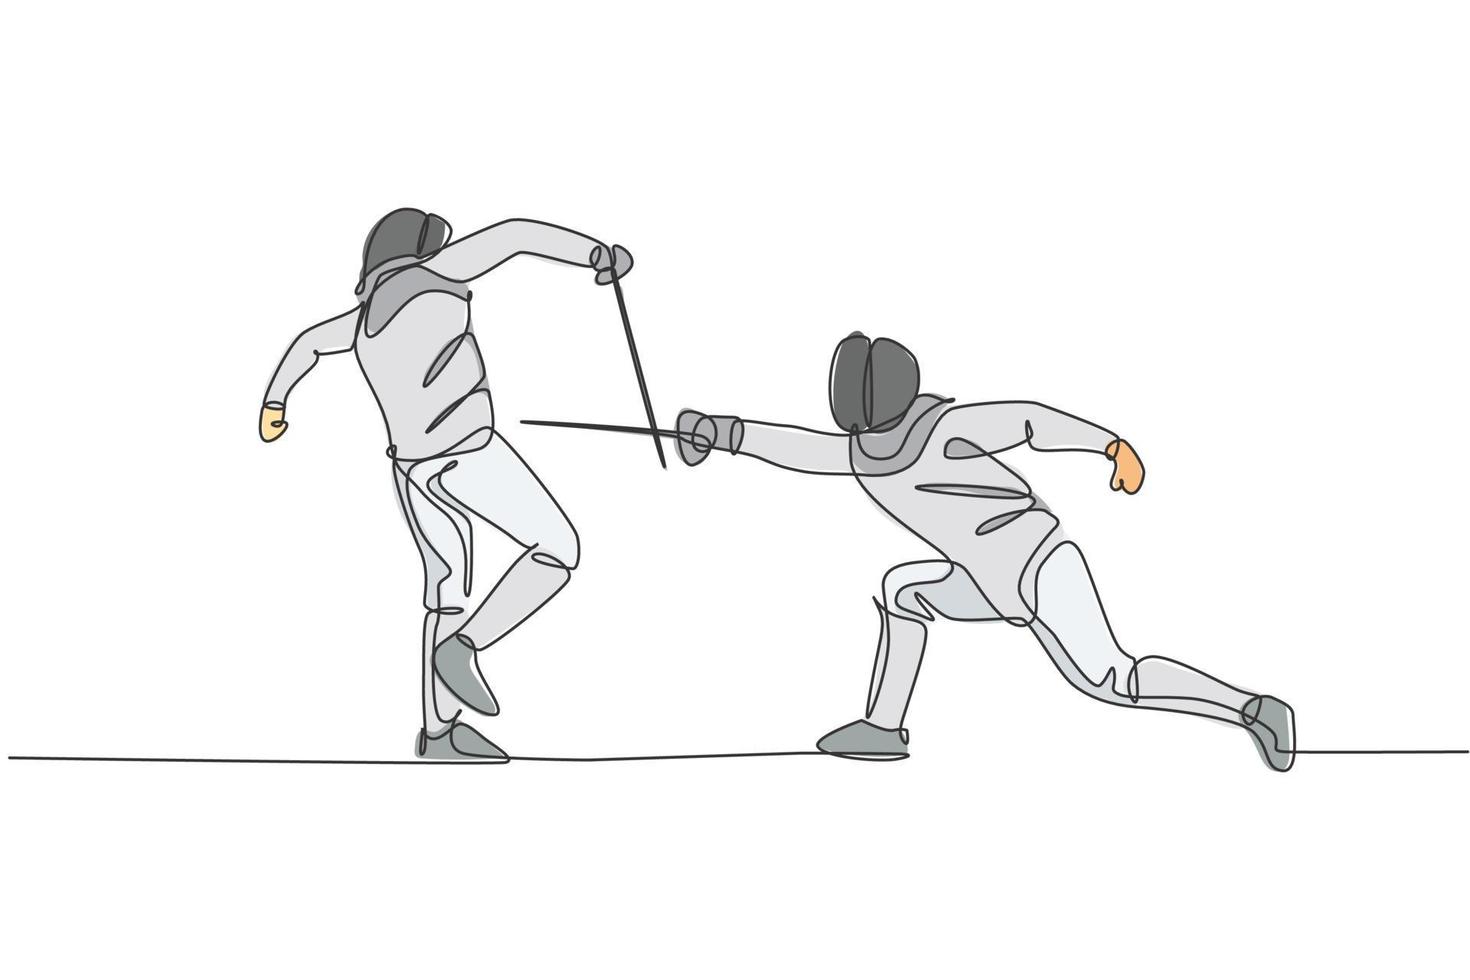 un dessin en ligne continu de deux jeunes hommes pratiquant l'escrime d'un athlète se battant sur l'arène sportive. costume d'escrime et tenant le concept d'action d'épée. illustration vectorielle de dessin dynamique à une seule ligne vecteur